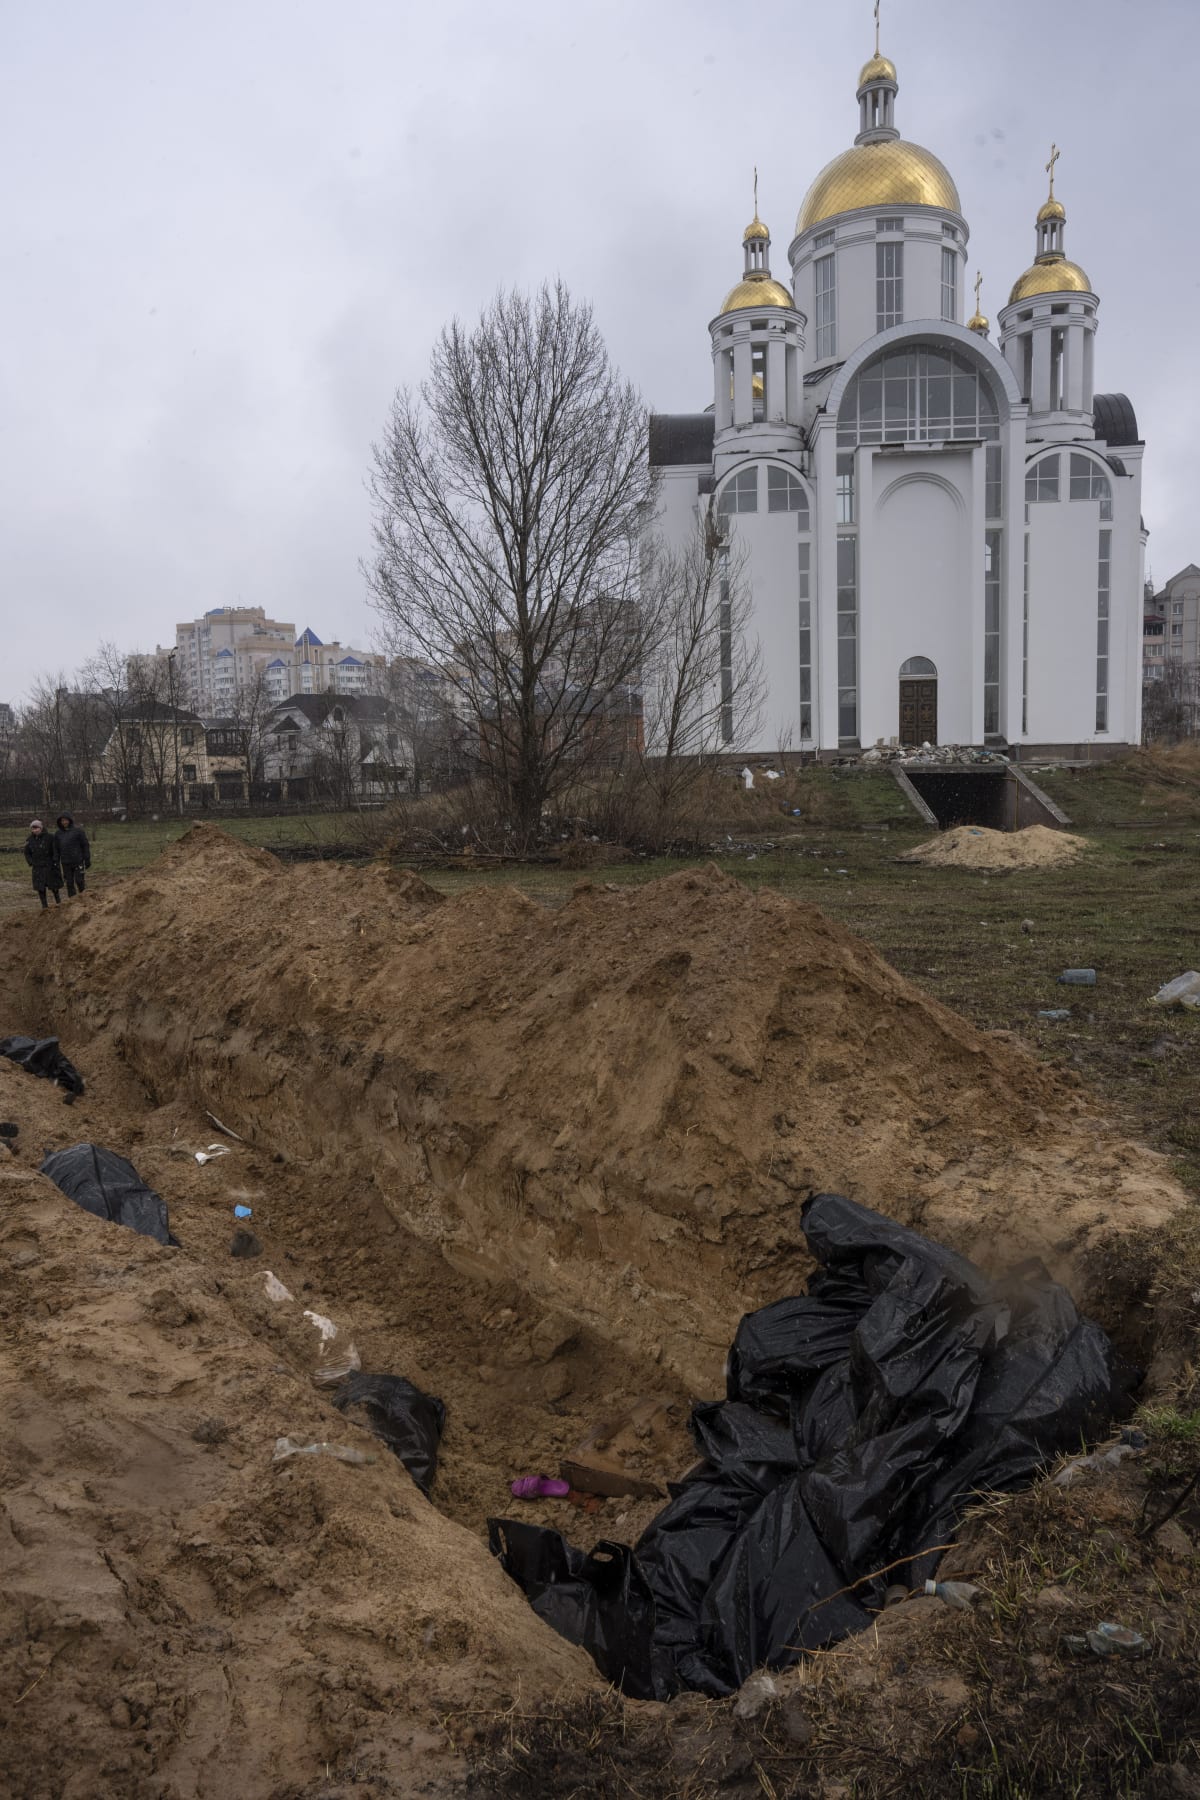 V nezahrnutém hromadném hrobu u kostela byly vidět kusy těl, ruce, nohy, informovali zpravodajové z místa.